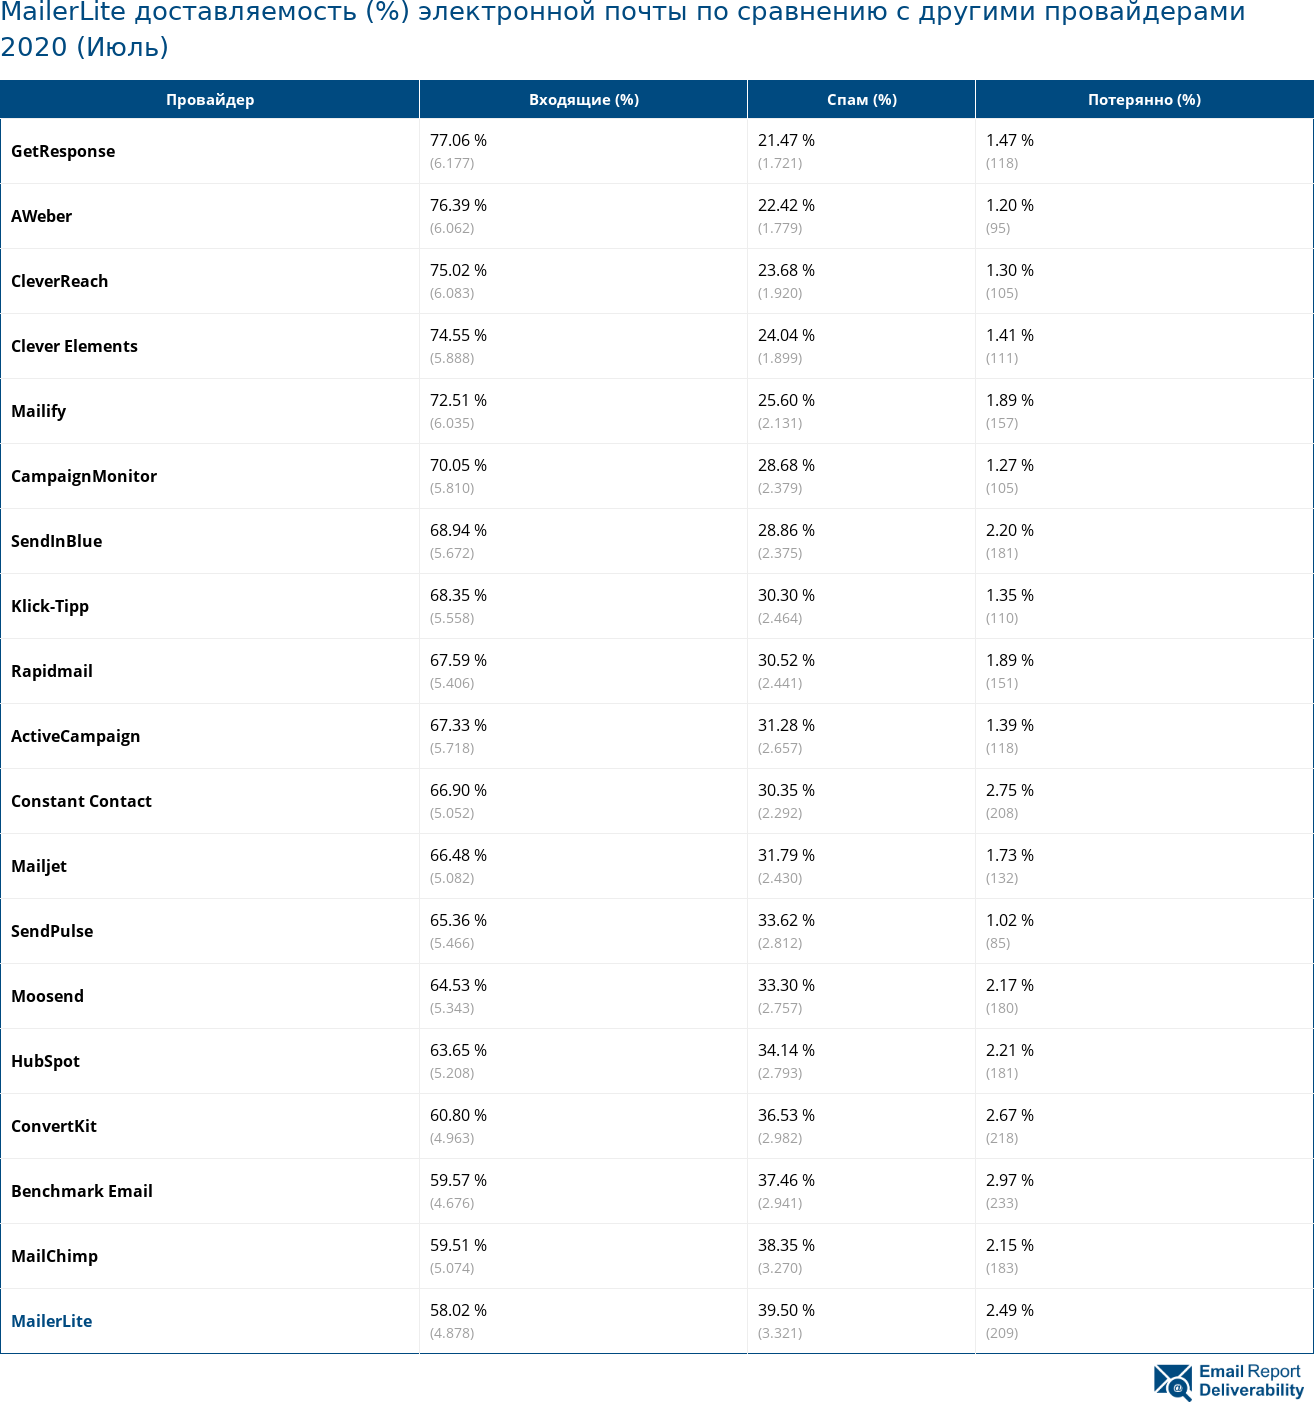 MailerLite доставляемость (%) электронной почты по сравнению с другими провайдерами 2020 (Июль)